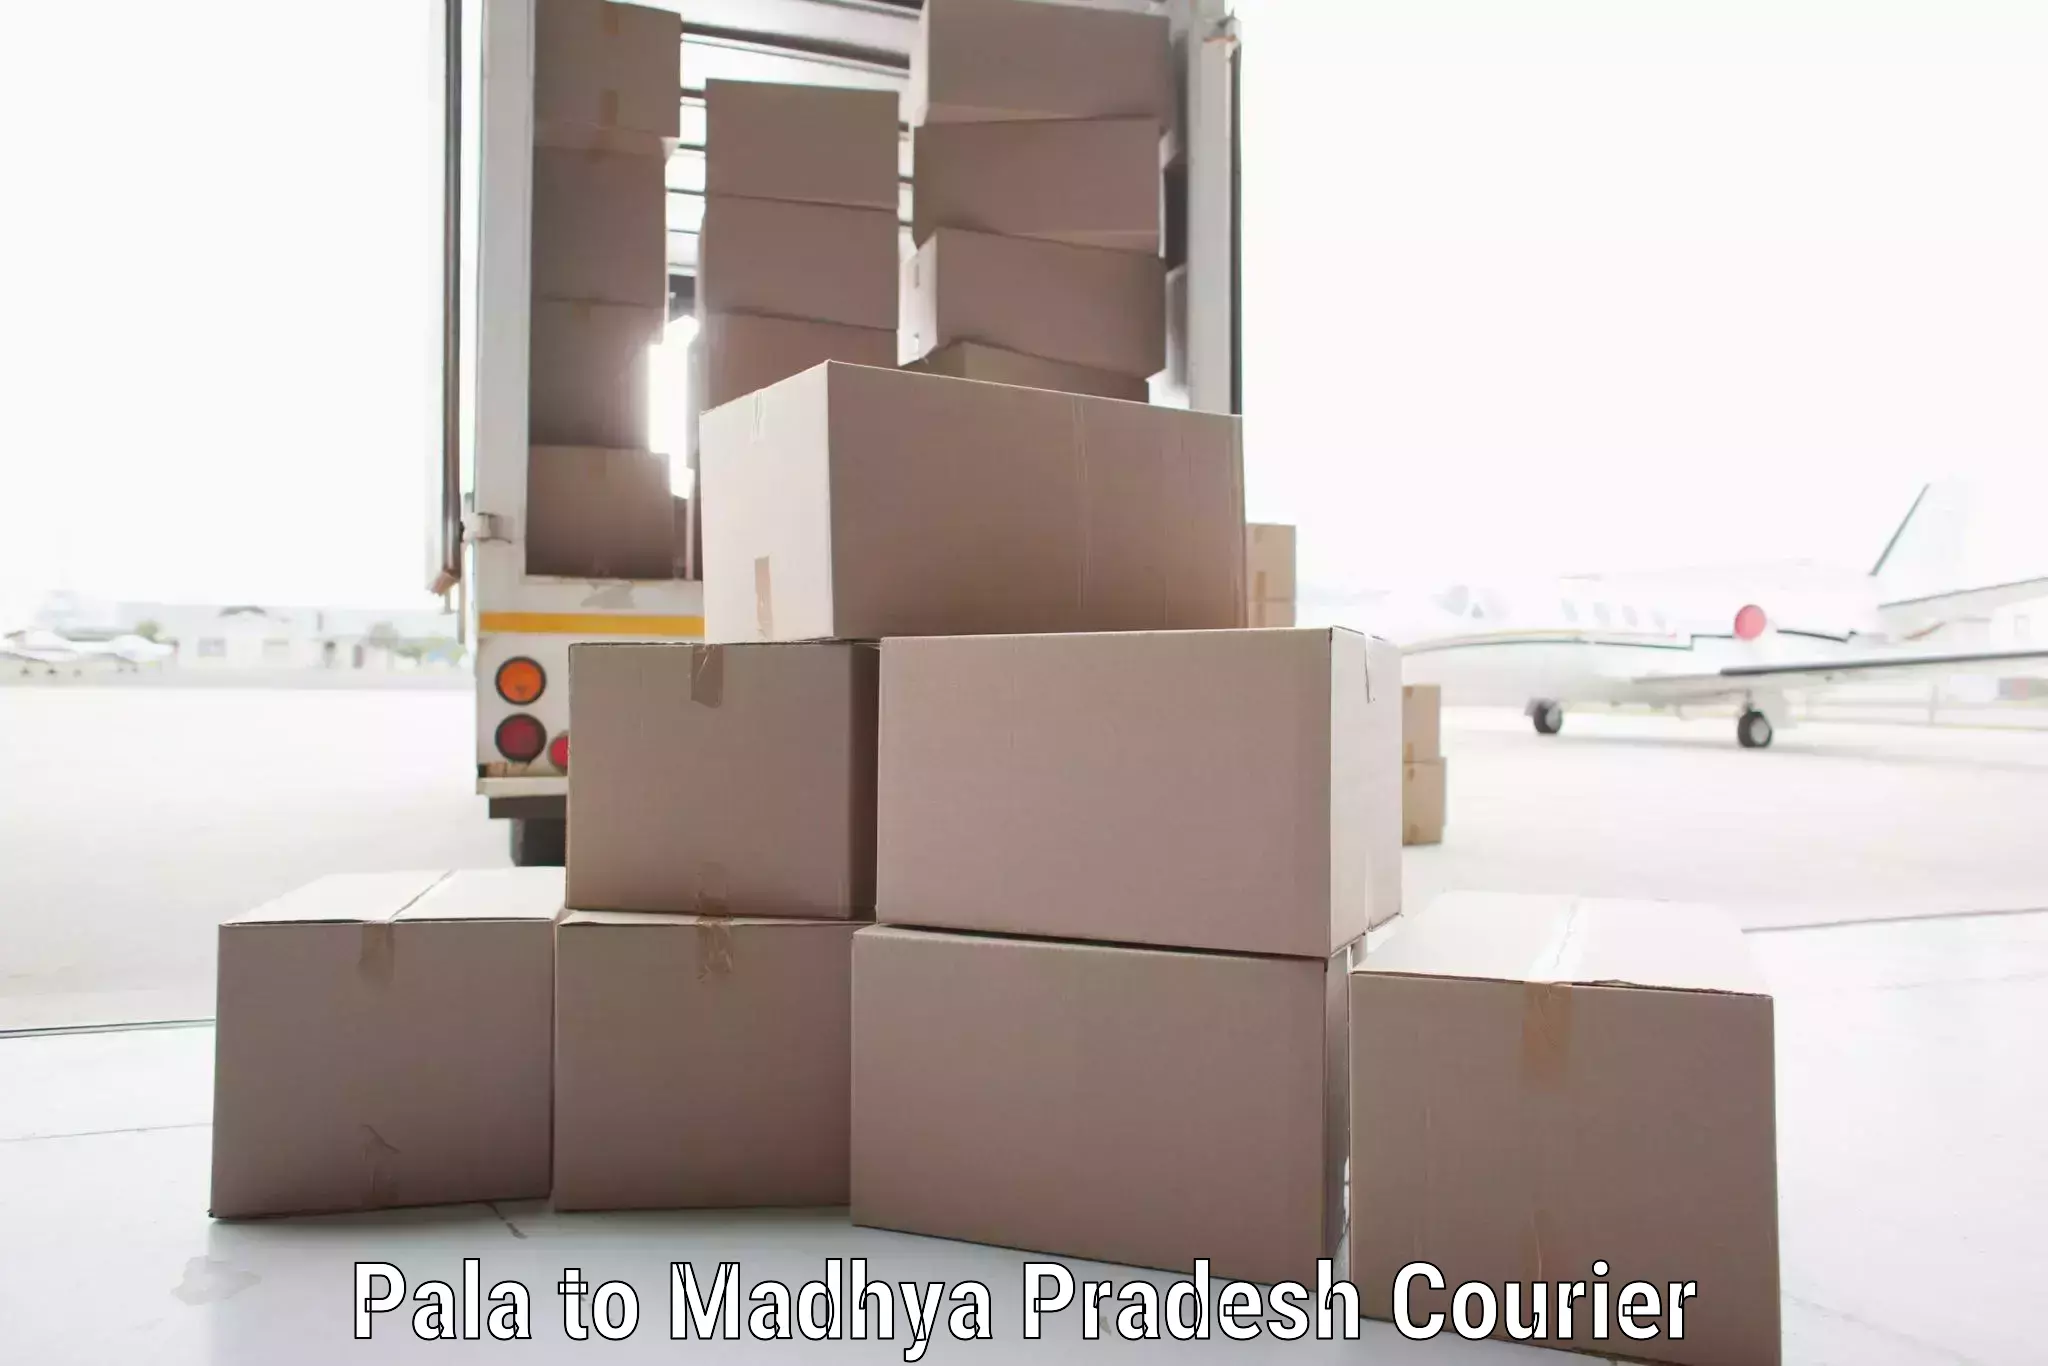 Global shipping networks Pala to Ranchha